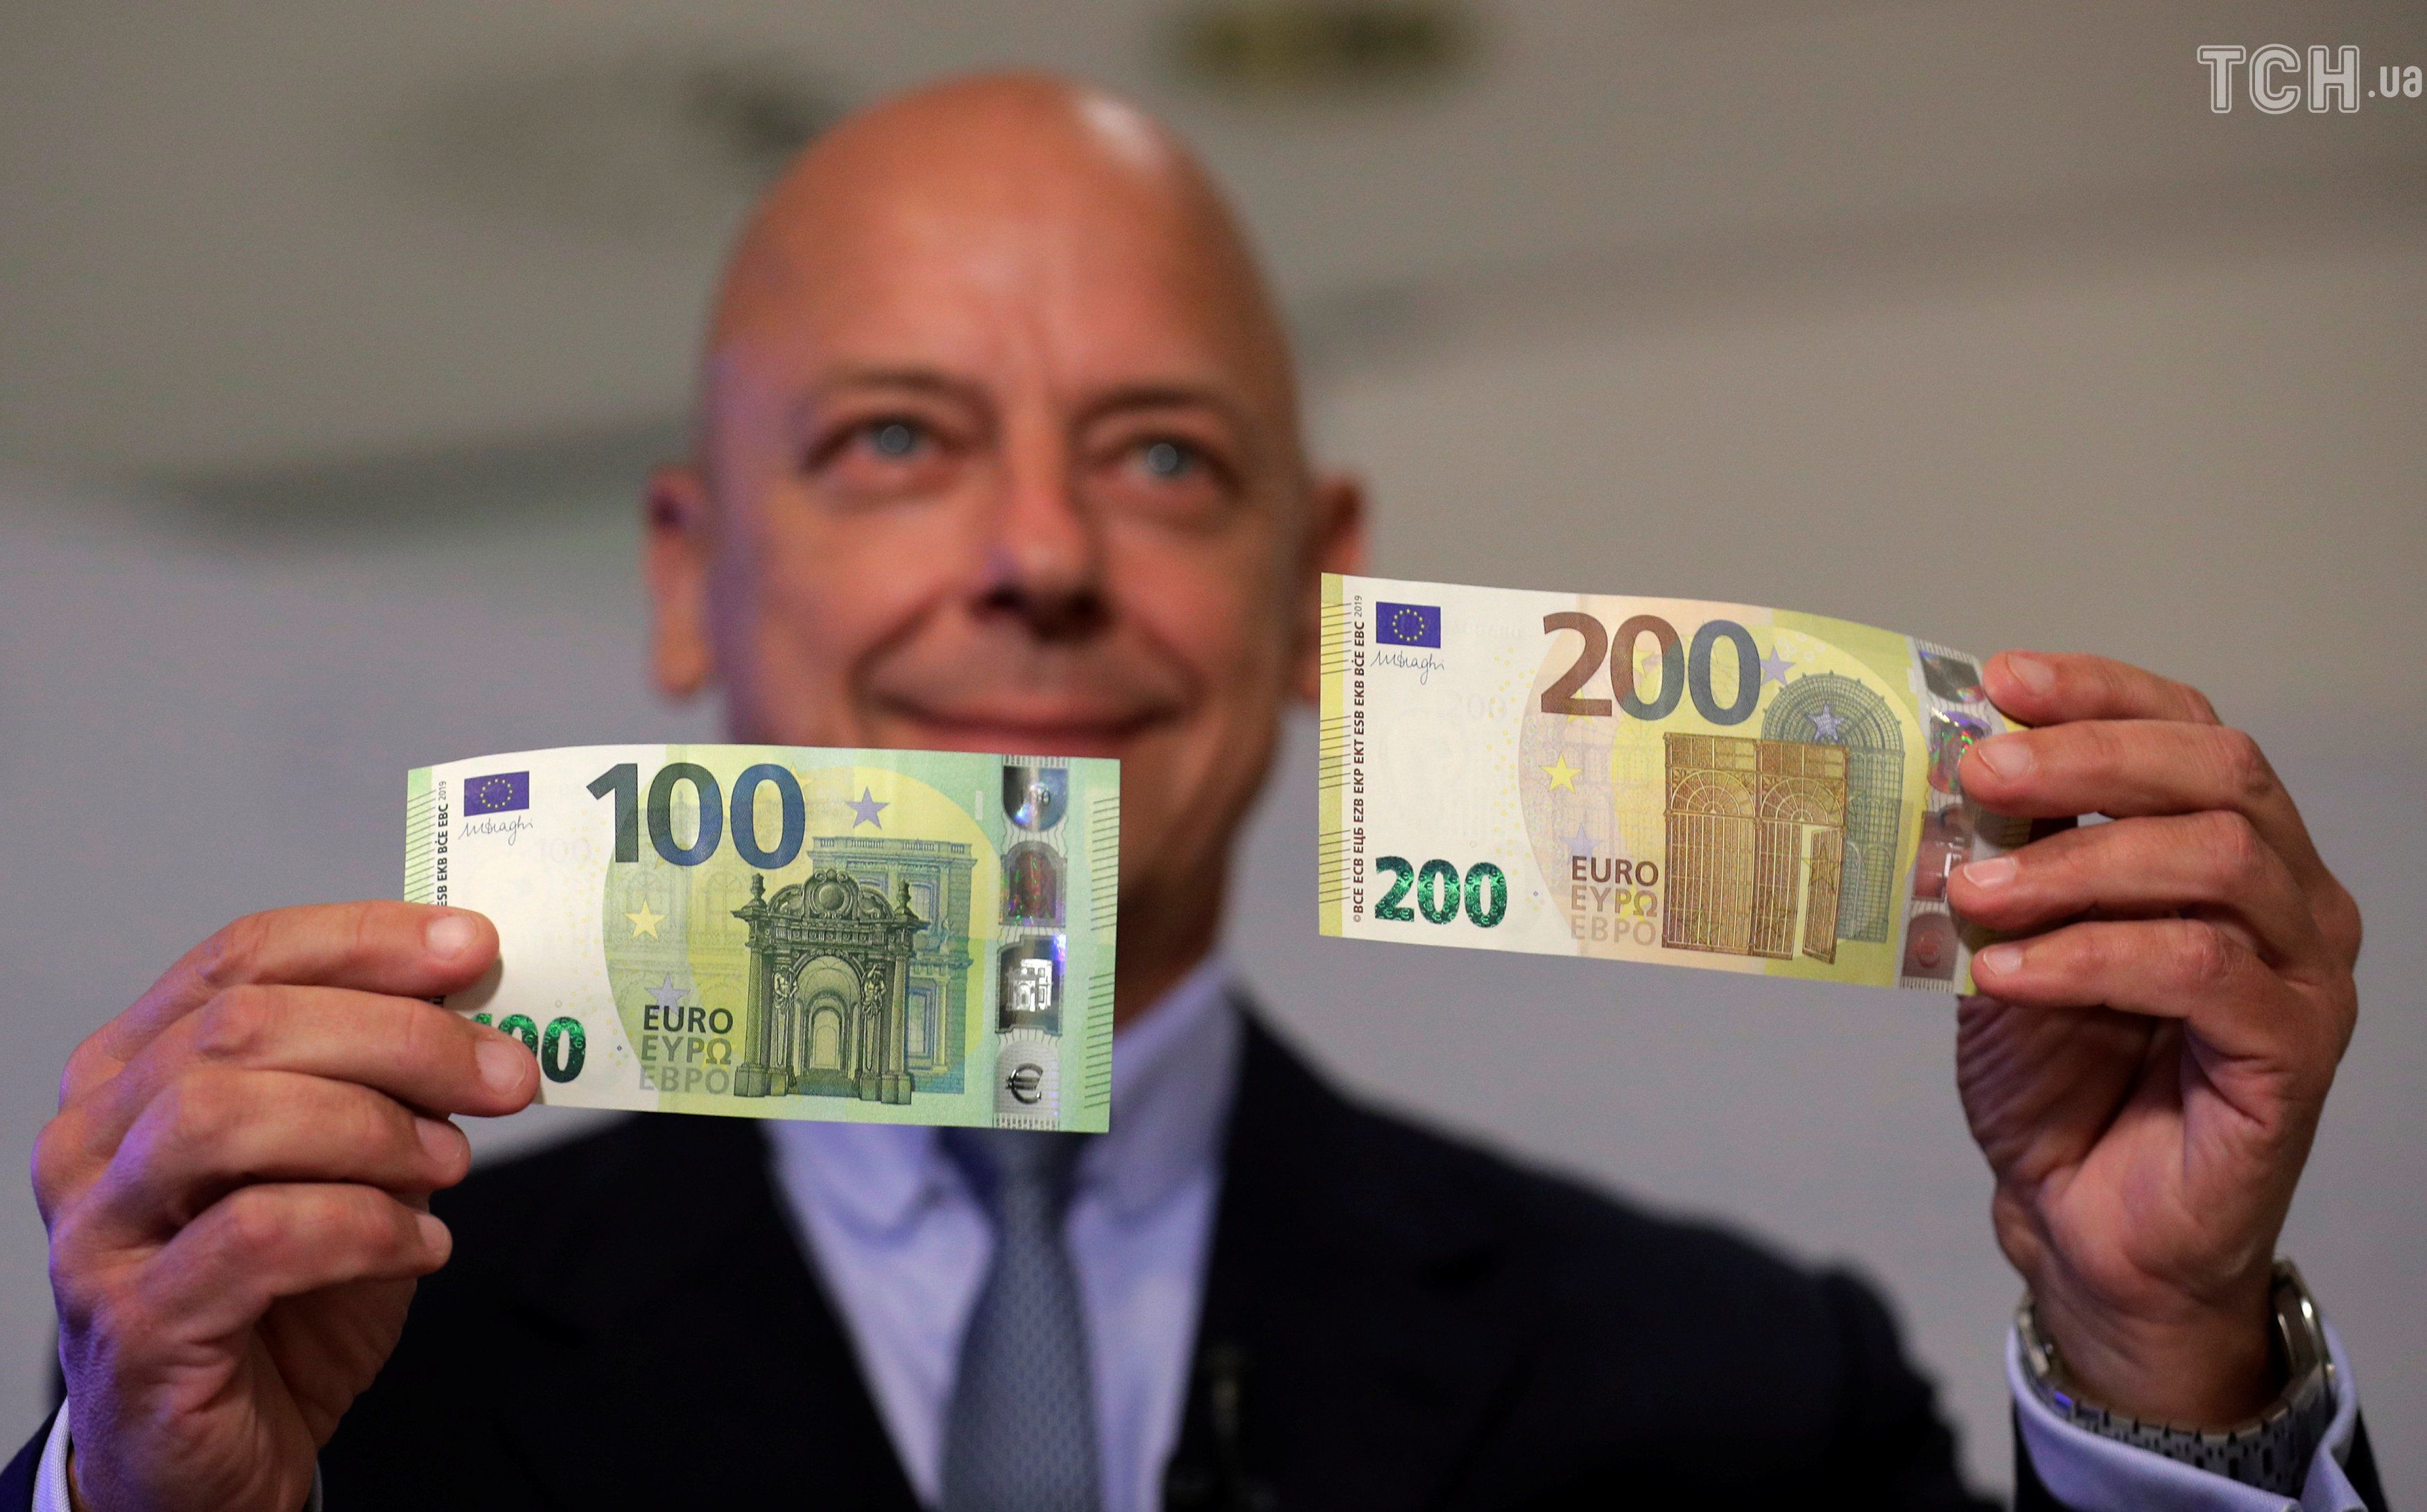 Купюра валют. Евро банкноты номинал 200. Новая купюра 100 евро. Купюра 200 евро. Новый евро банкноты 100 и 200.